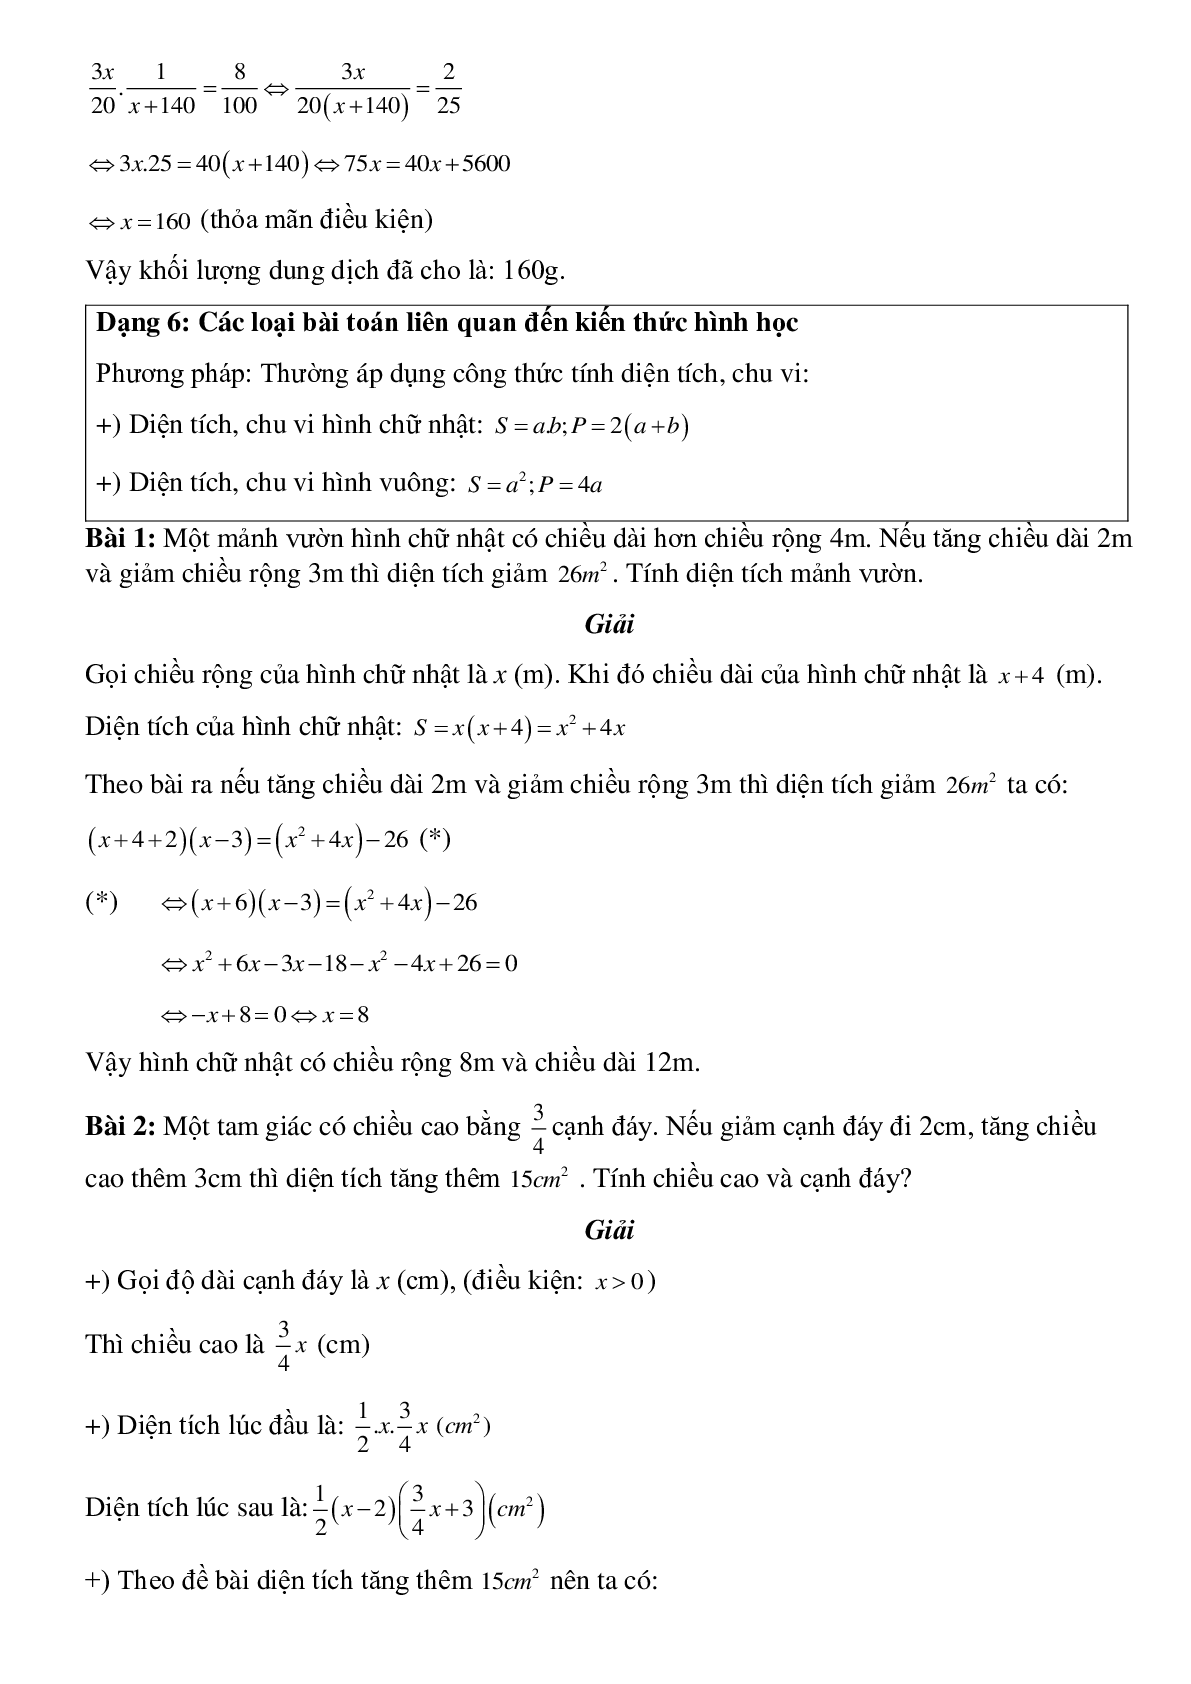 Sáu dạng bài tập thường gặp về Giải bài toán bằng cách lập phương trình có lời giải (trang 8)